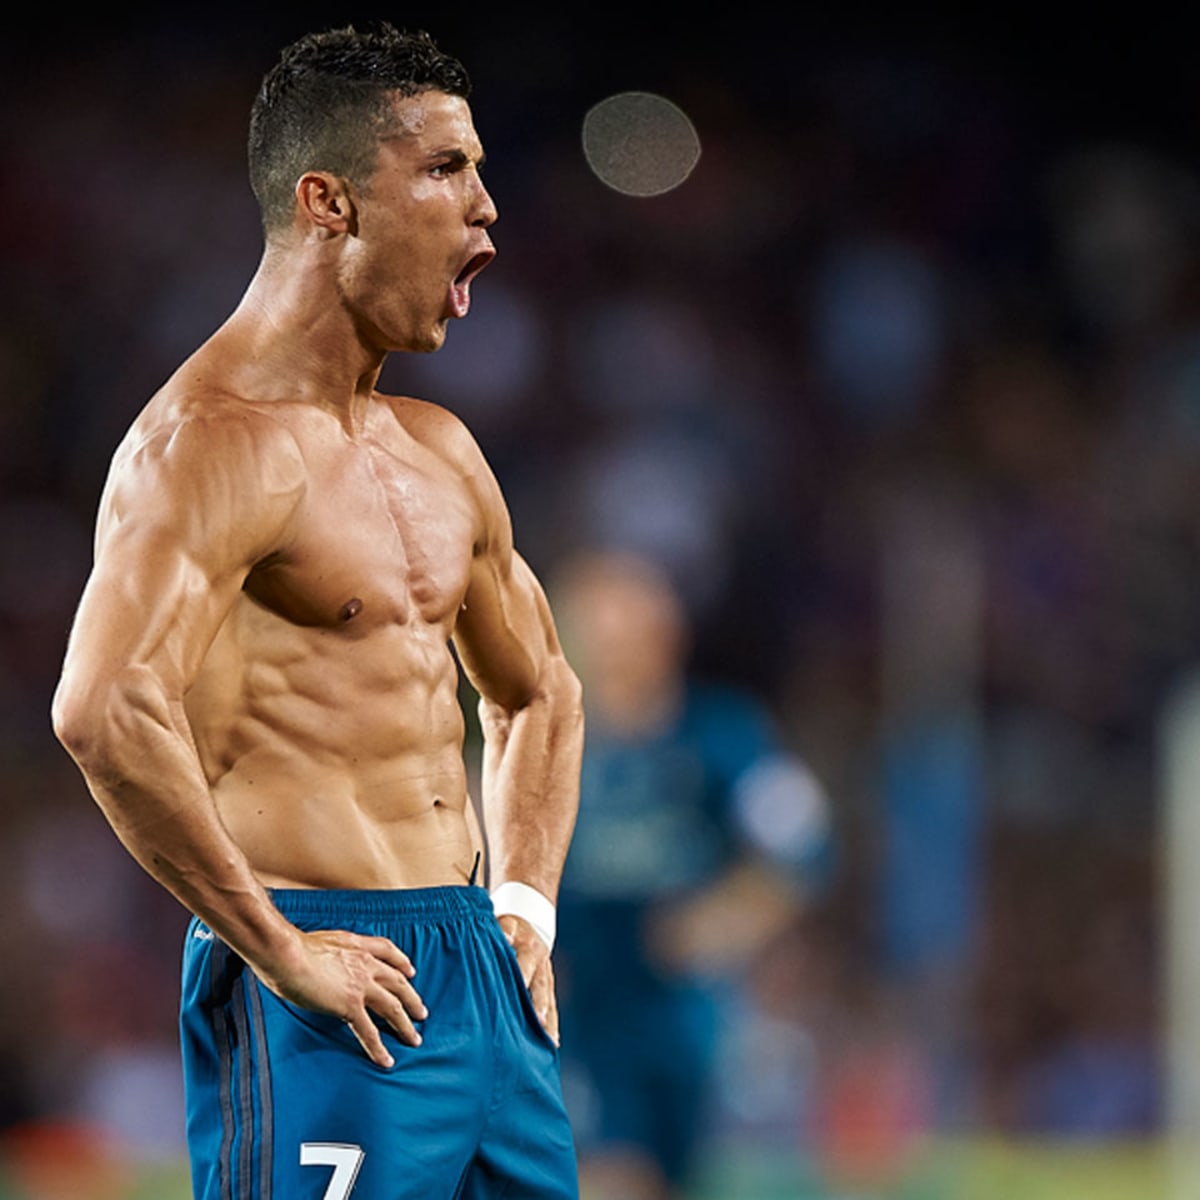 Tiểu sử Ronaldo - Hành trình sự nghiệp và những thành tích đáng kinh ngạc